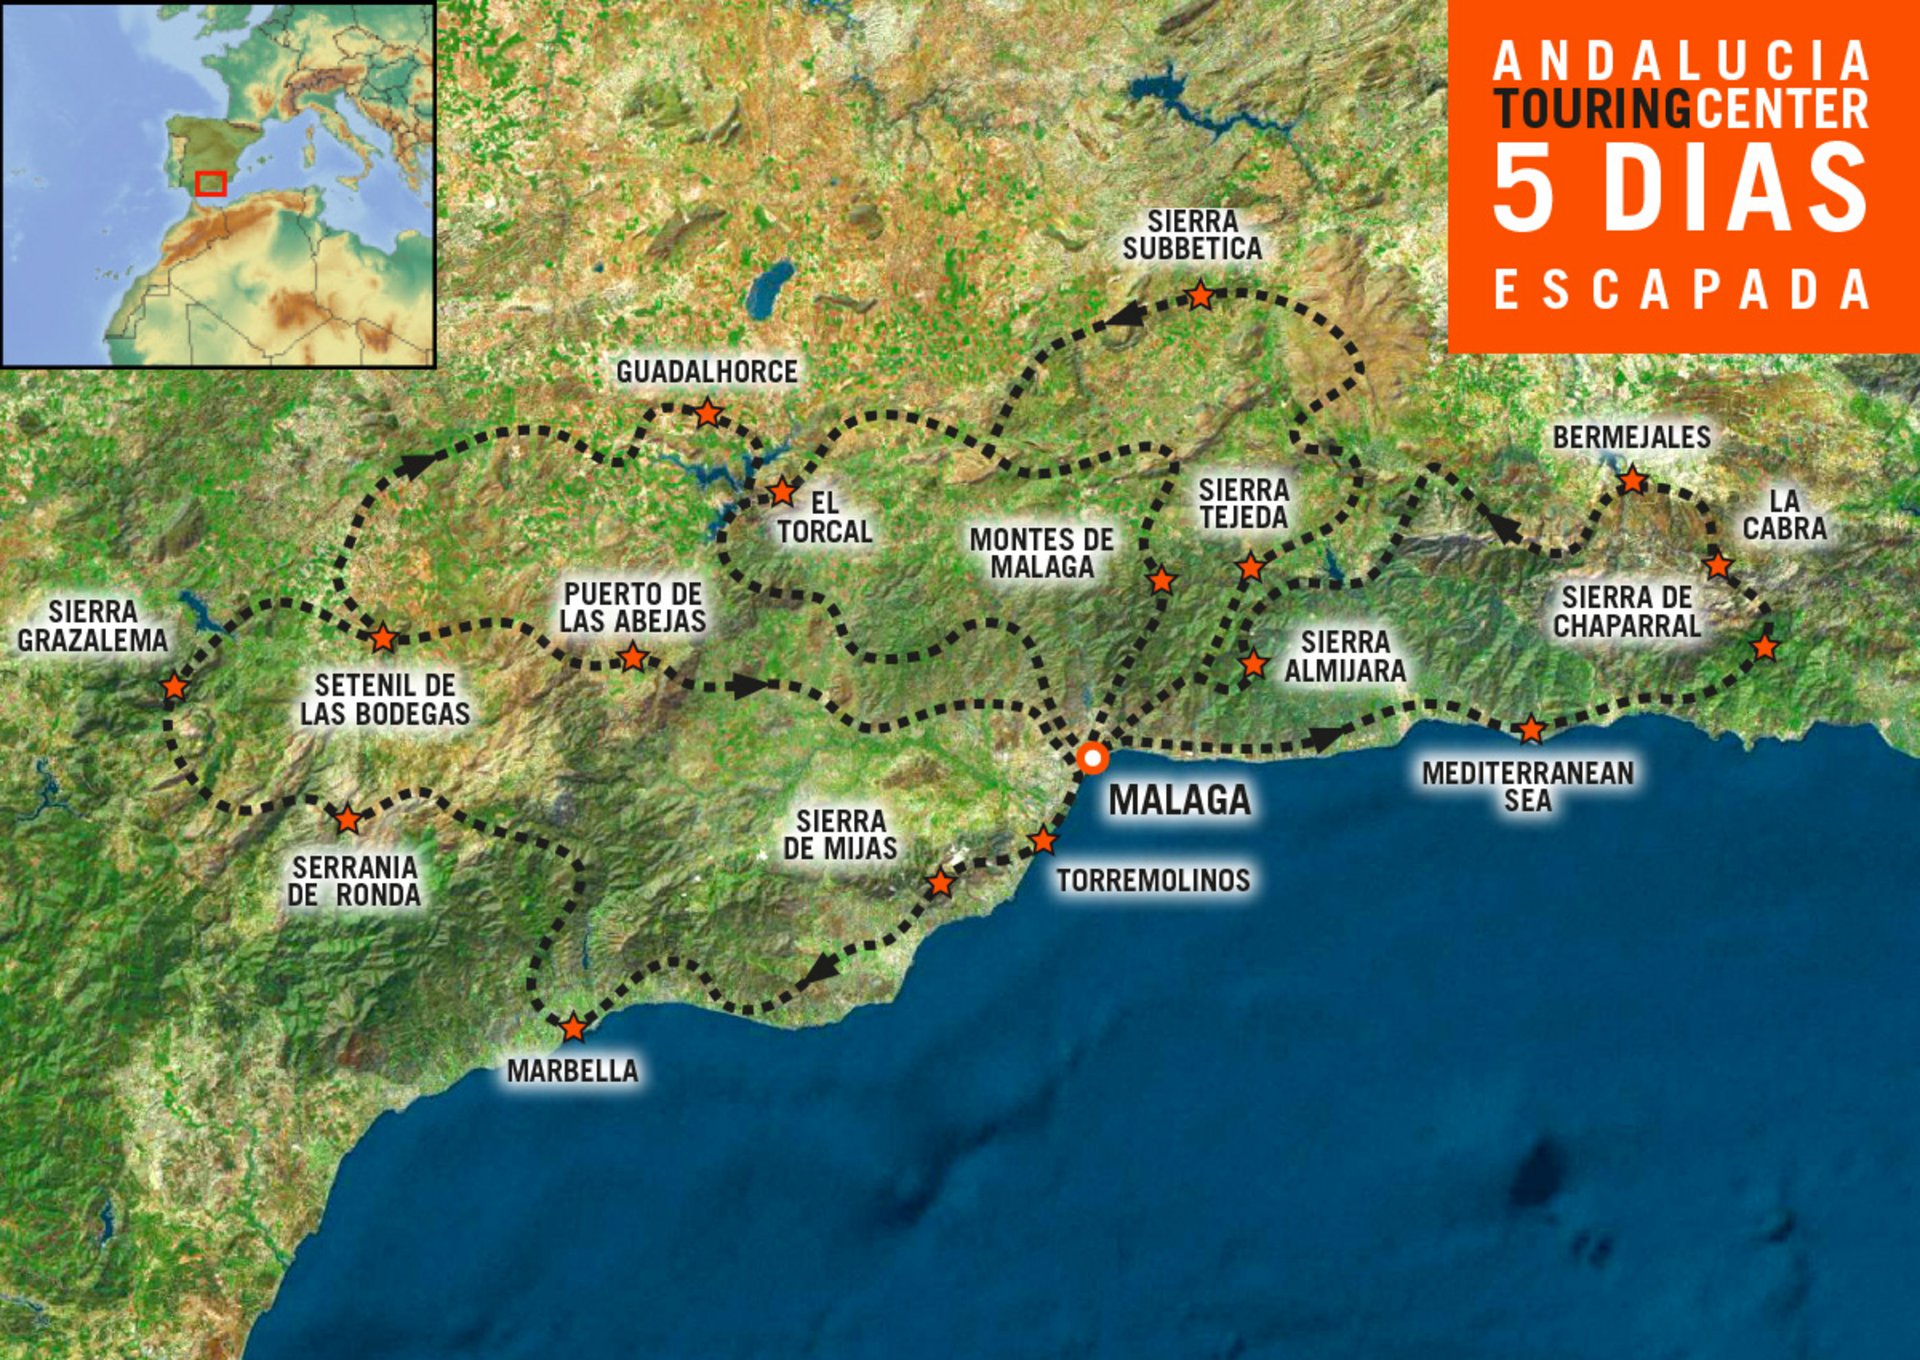 Mapa del Touring Center Andalucia